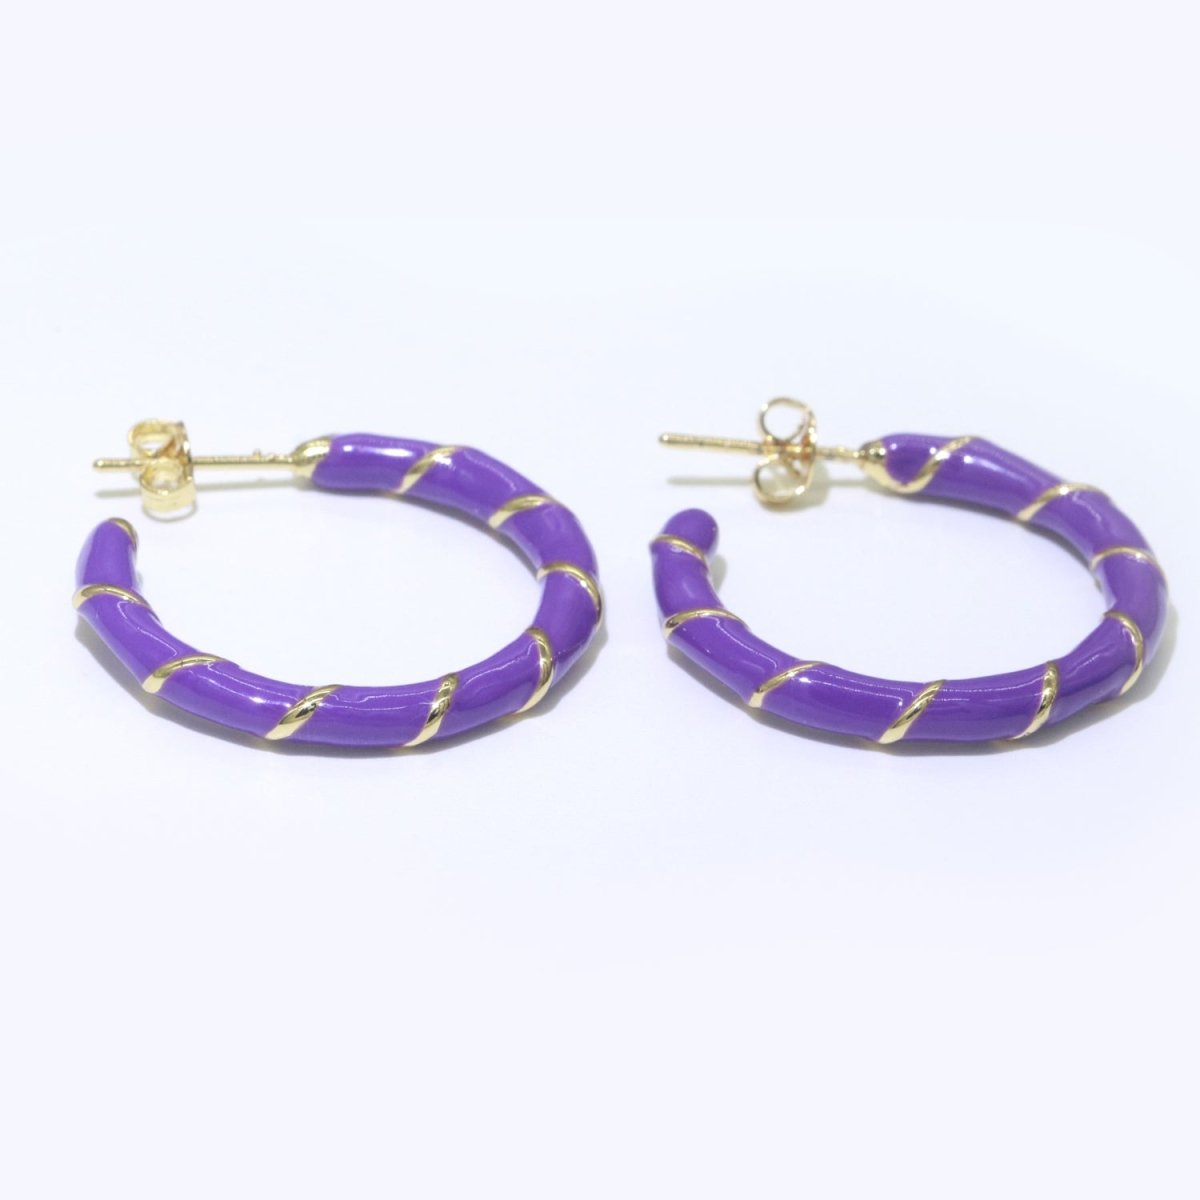 Purple Enamel Hoop Earring with Gold Swirl 26mm Hoop earring Jewelry Gift T-007 - DLUXCA